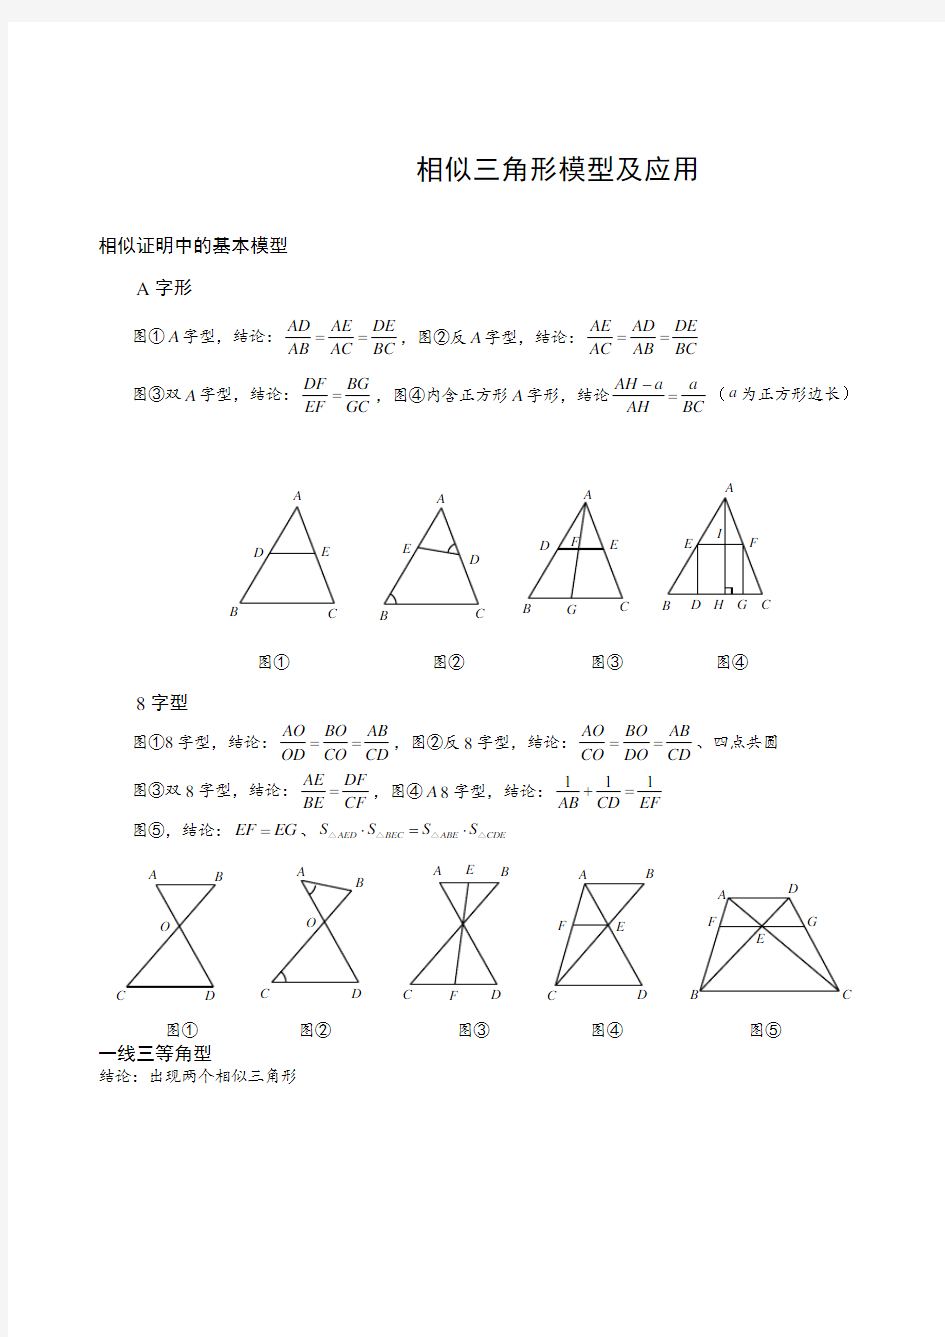 相似三角形常用模型及应用